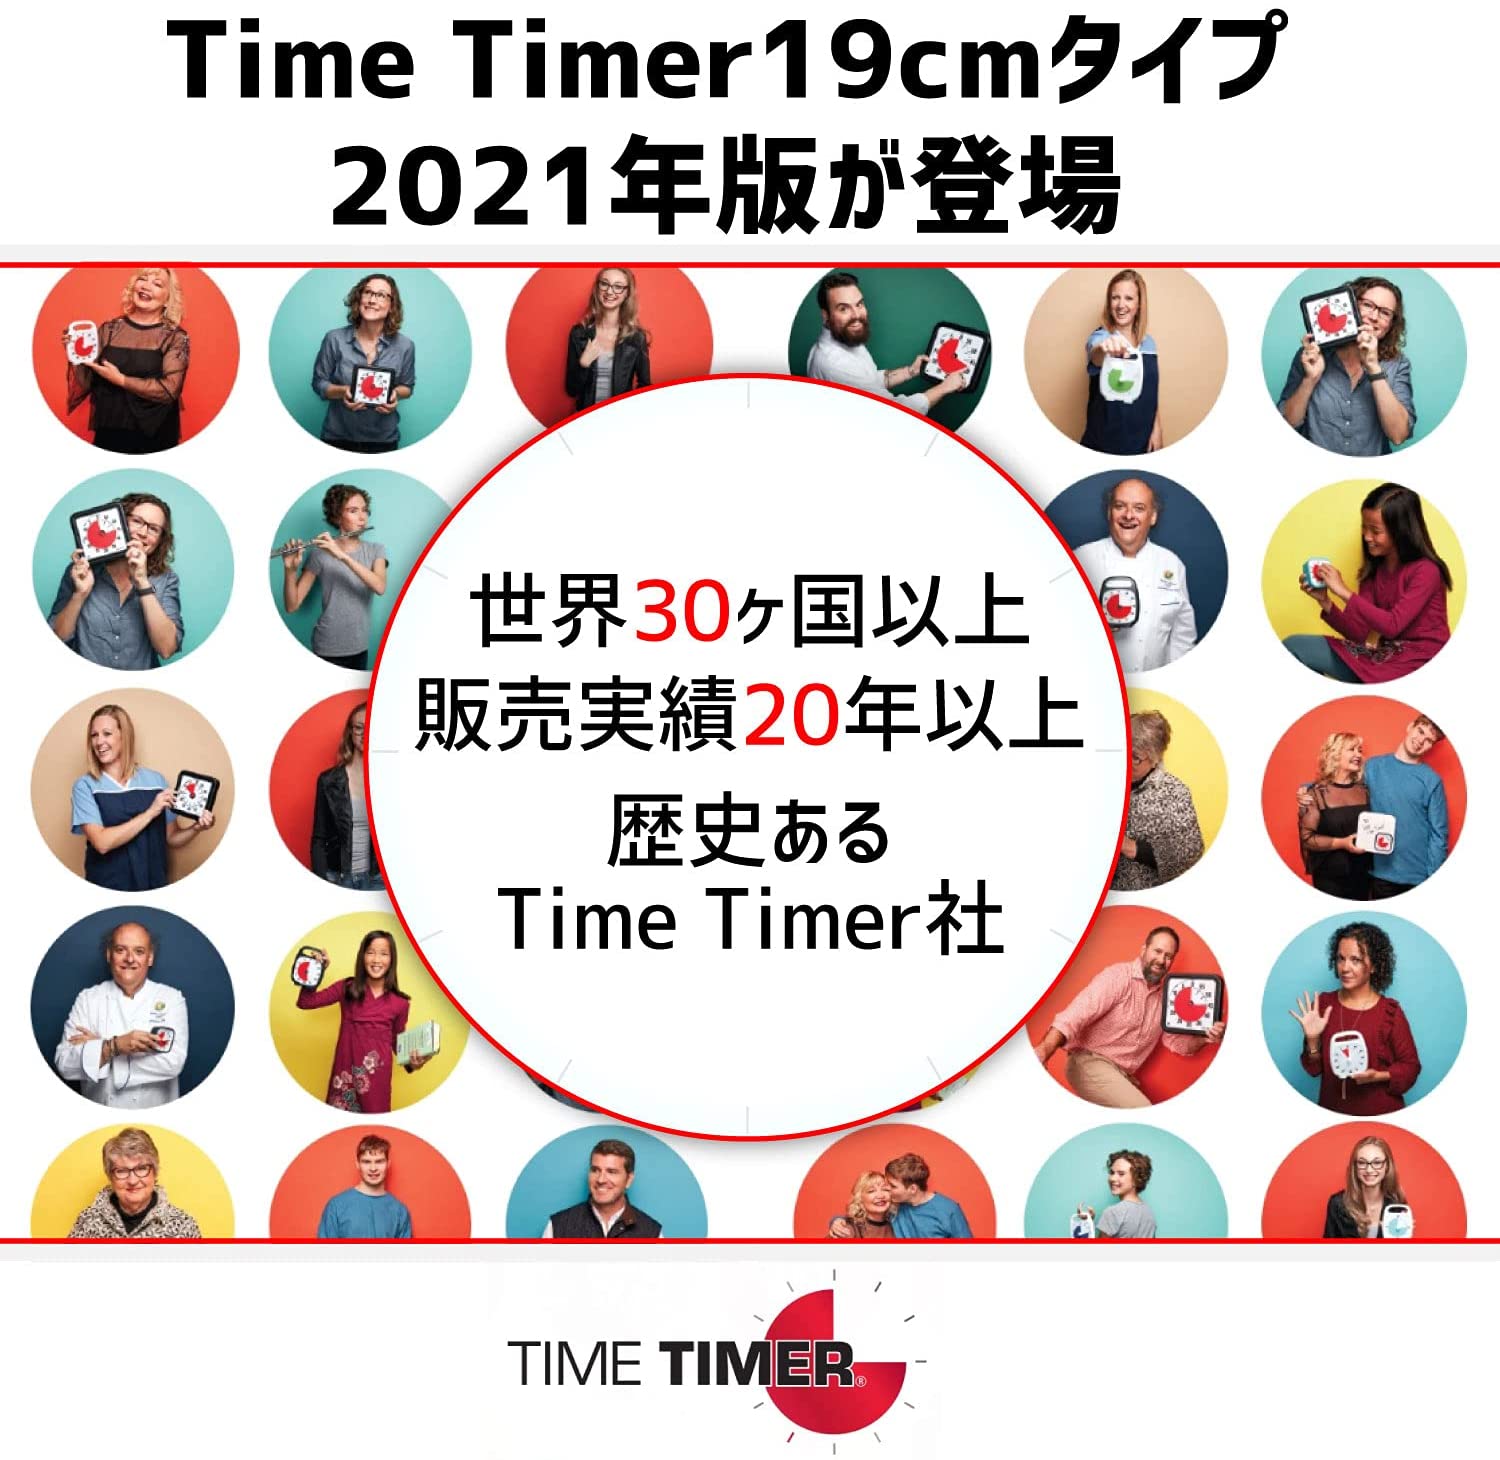 新版 タイムタイマー8（8インチ・約20 cm）マグネット付き - 【公式